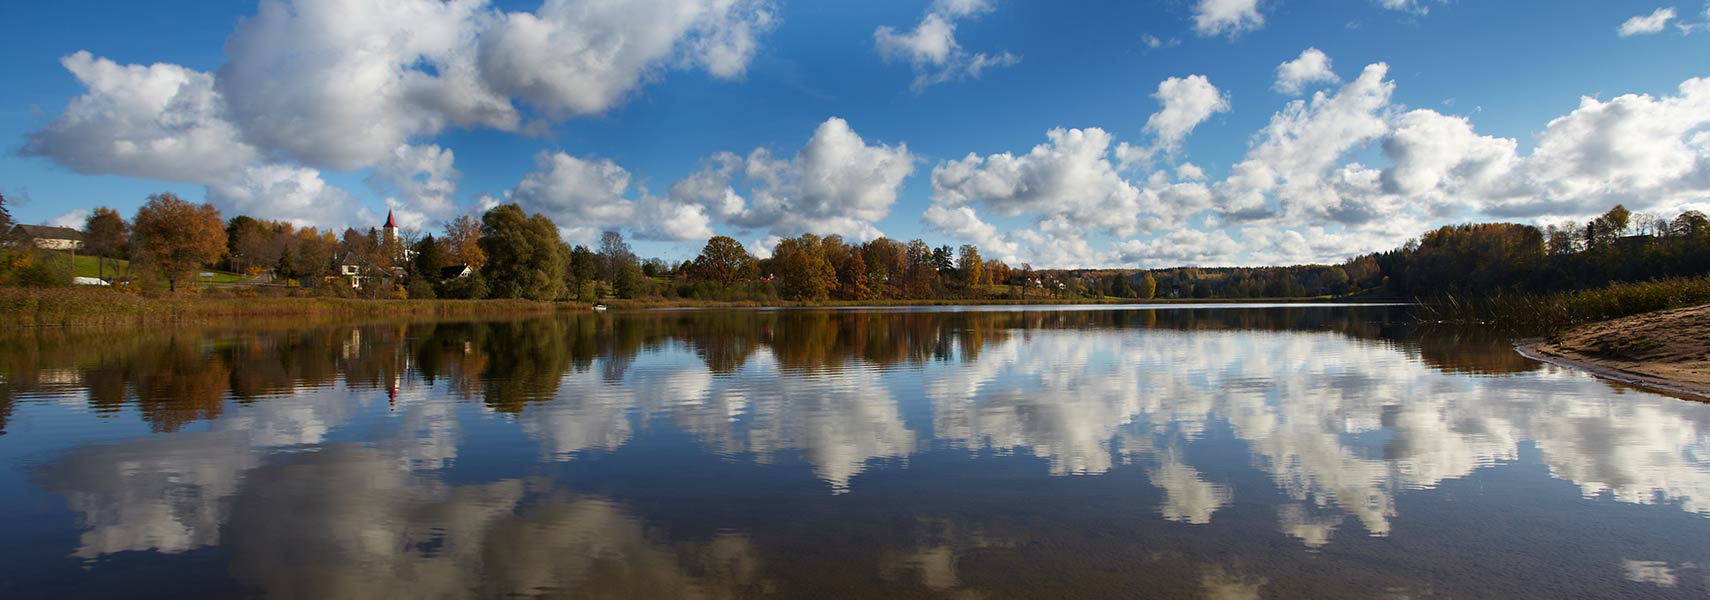 Rõuge Suurjärv lake, Võru County, Estonia